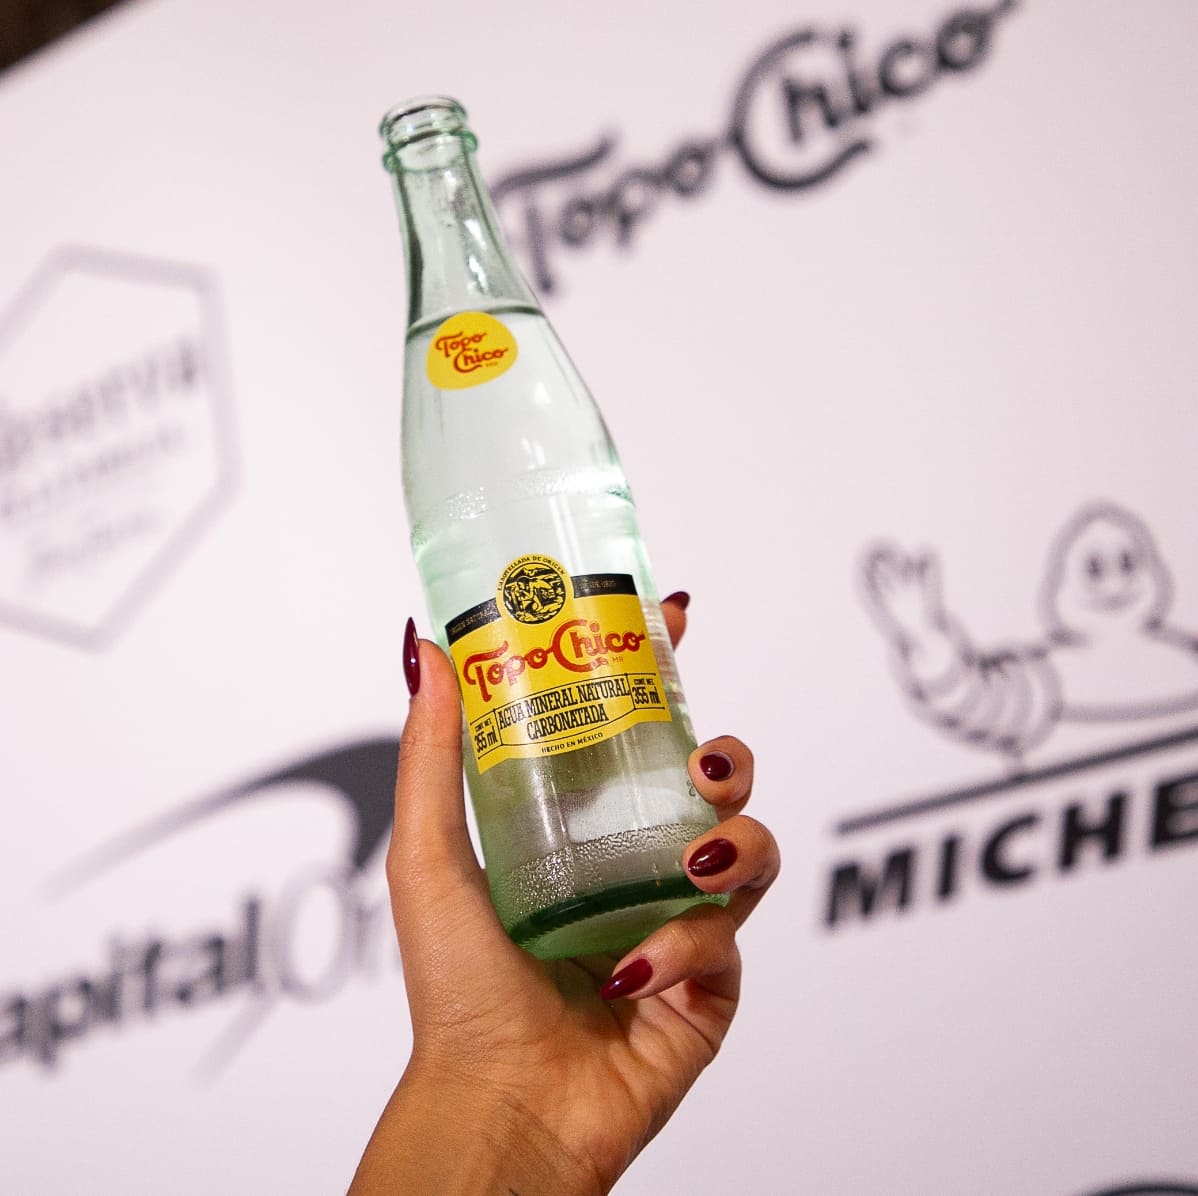 Una mano sostiene una botella de Topo Chico. De fondo, se observa una gráfica con los logos de Topo Chico y Michelin.